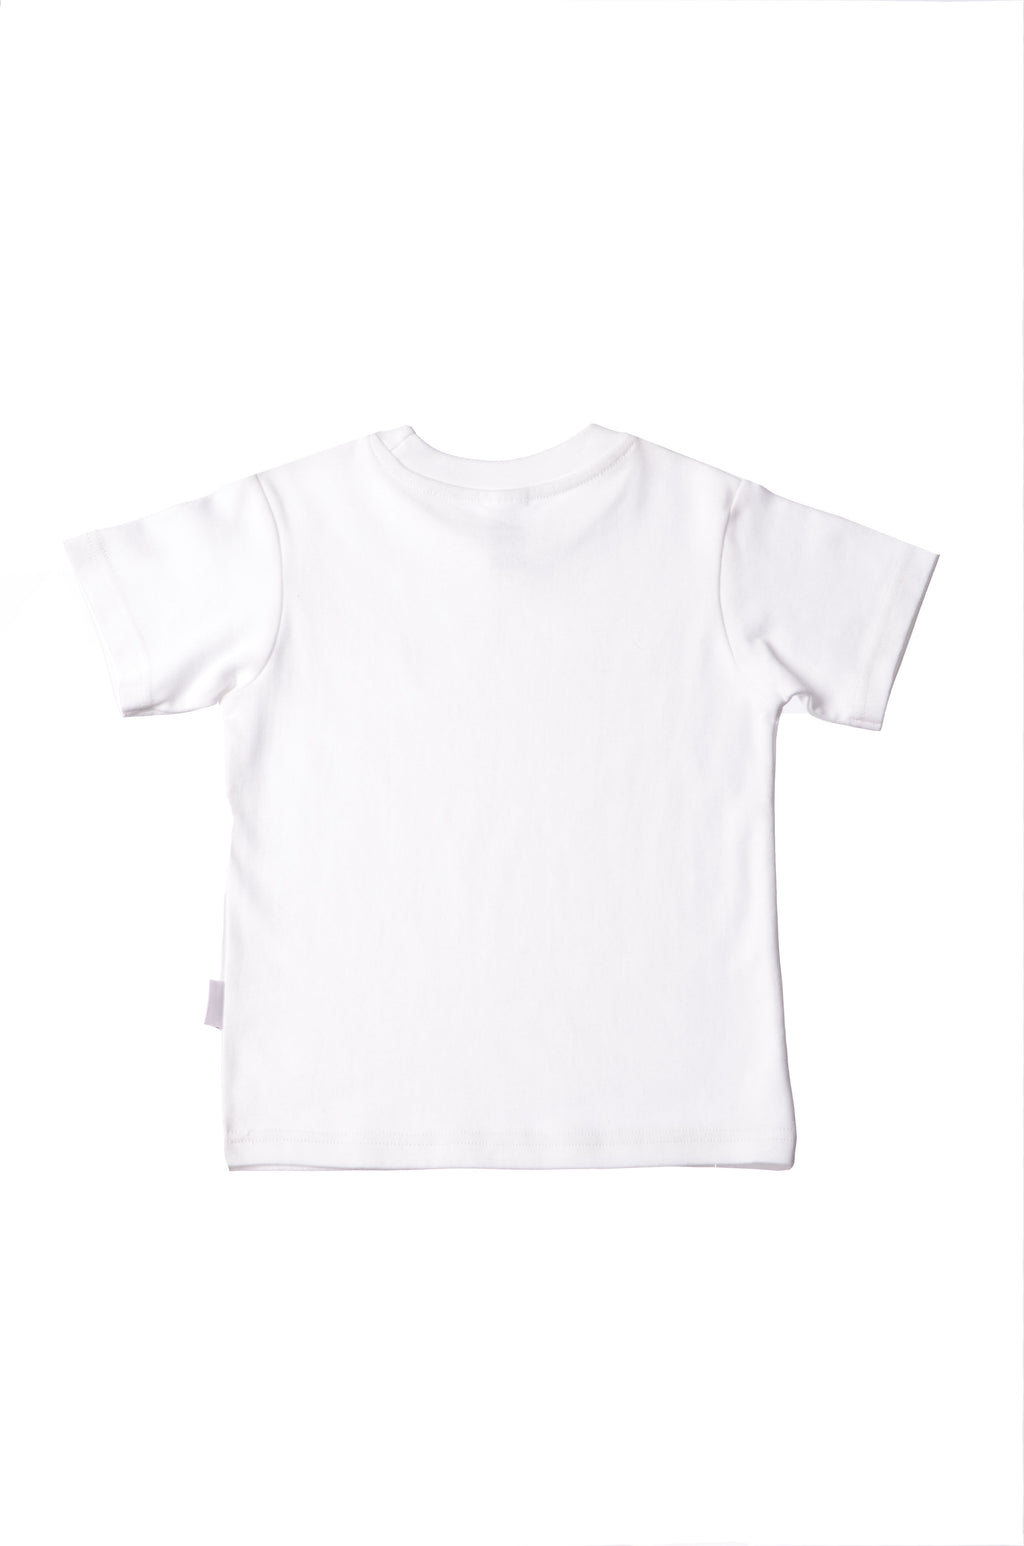 Mode-Online-Shop Kinder Bio-Baumwoll T-Shirt dezentem weiß in Leoparden – Aufdruck Baby Liliput mit